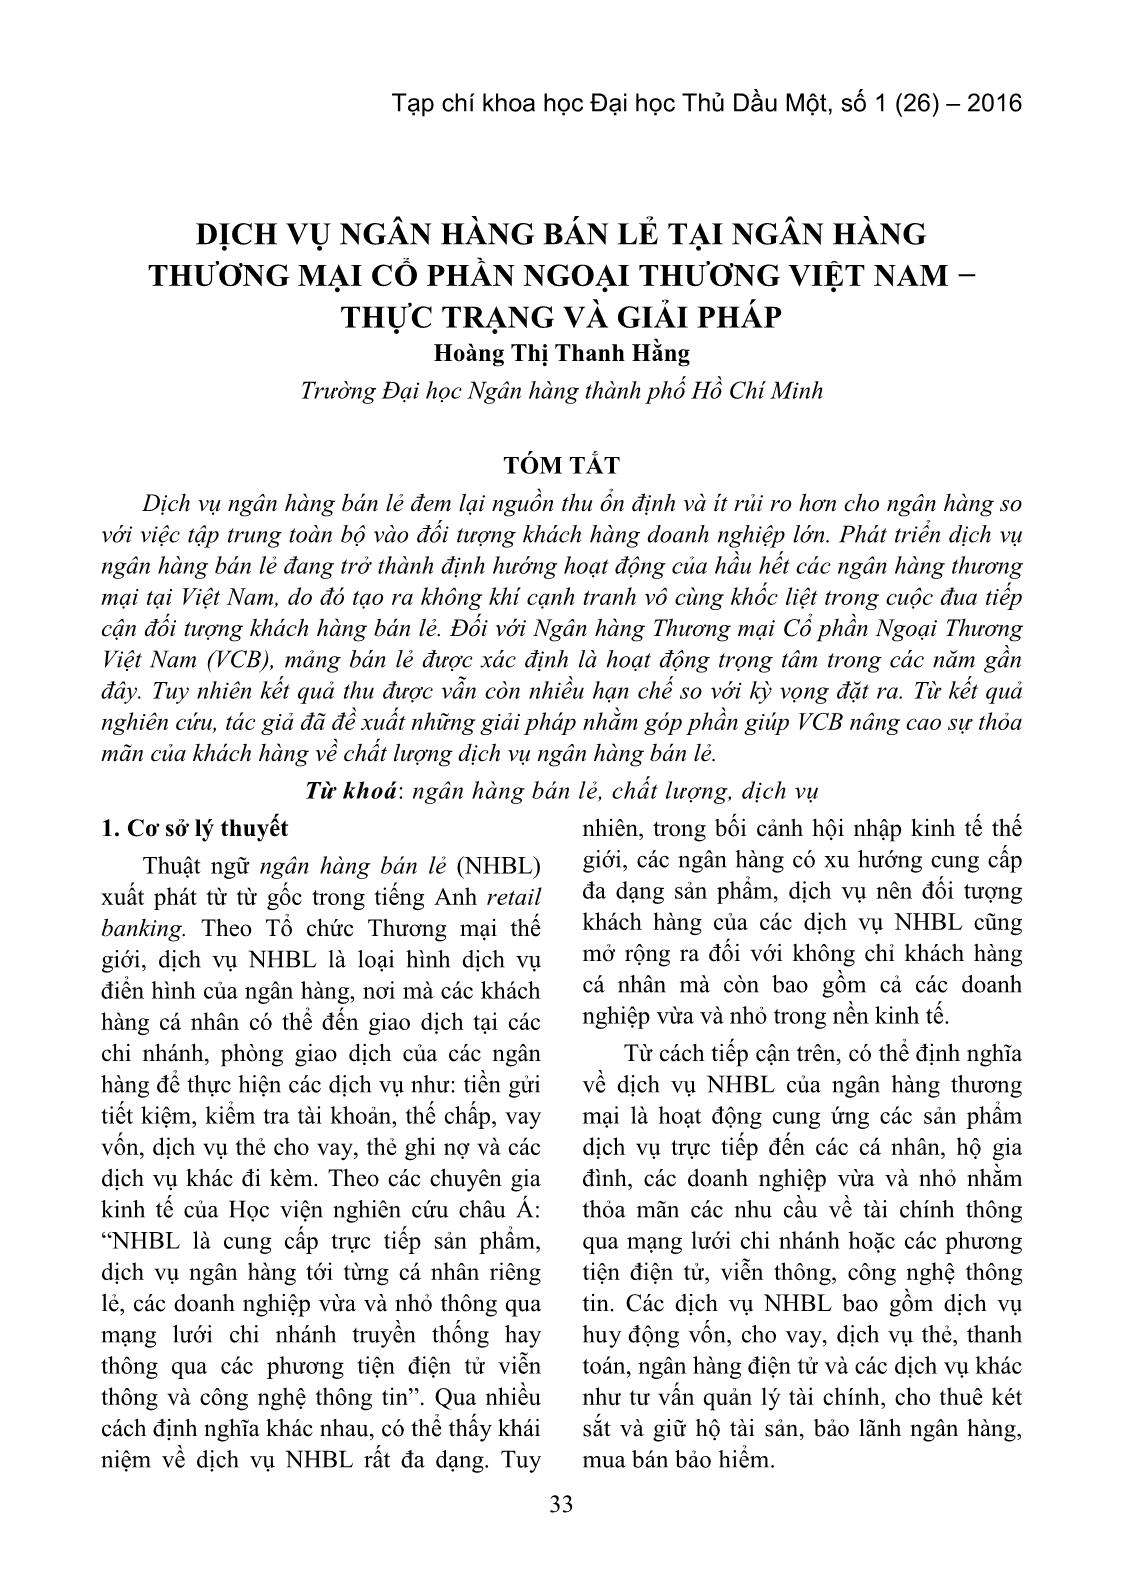 Dịch vụ ngân hàng bán lẻ tại ngân hàng thương mại Cổ phần Ngoại thương Việt Nam − thực trạng và giải pháp trang 1